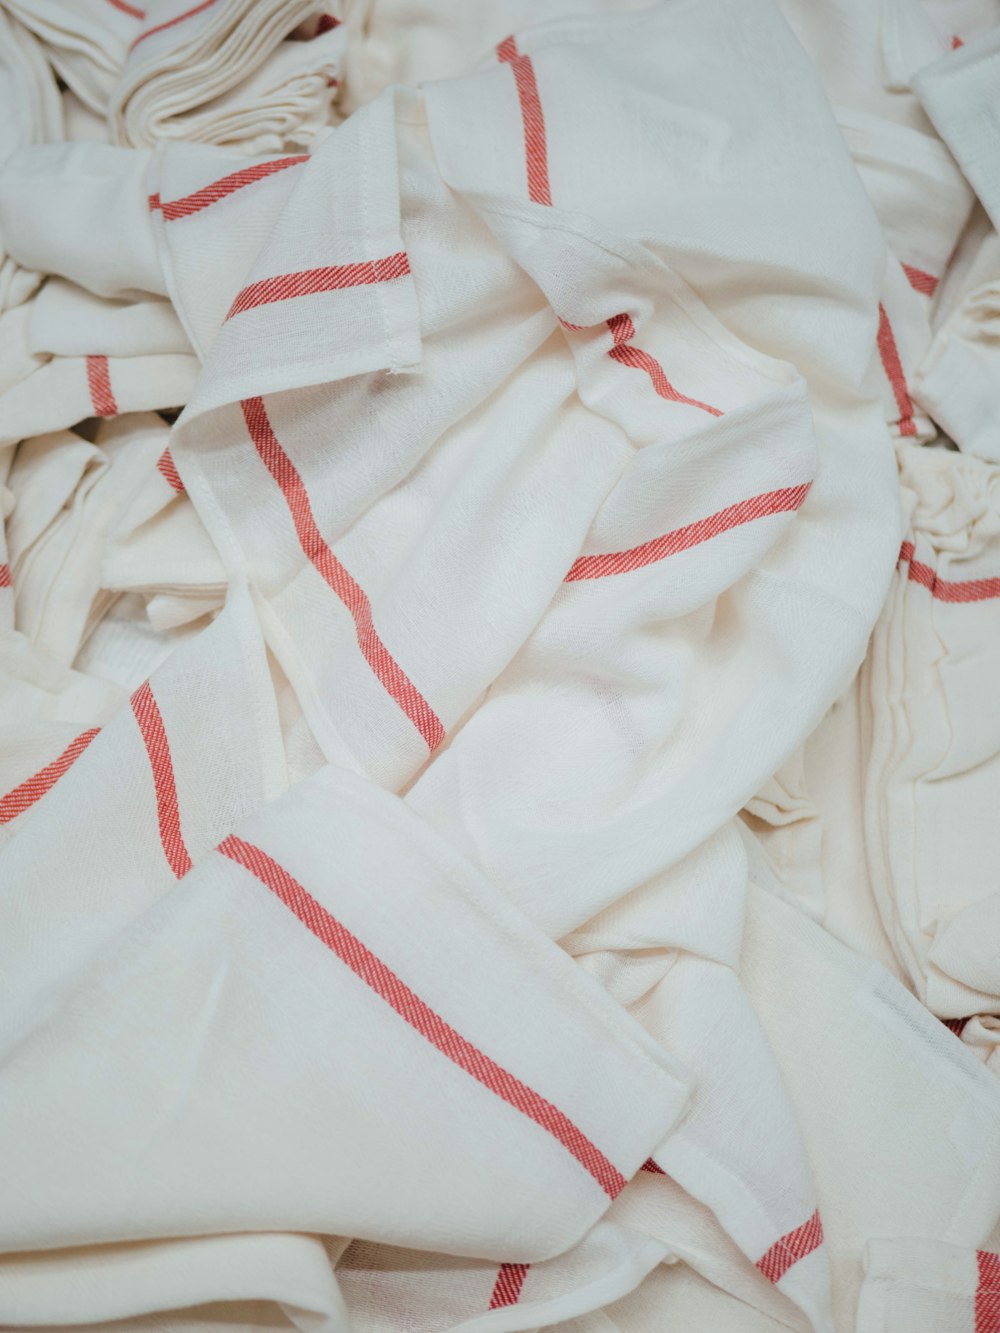 Textiles blancos y rojos